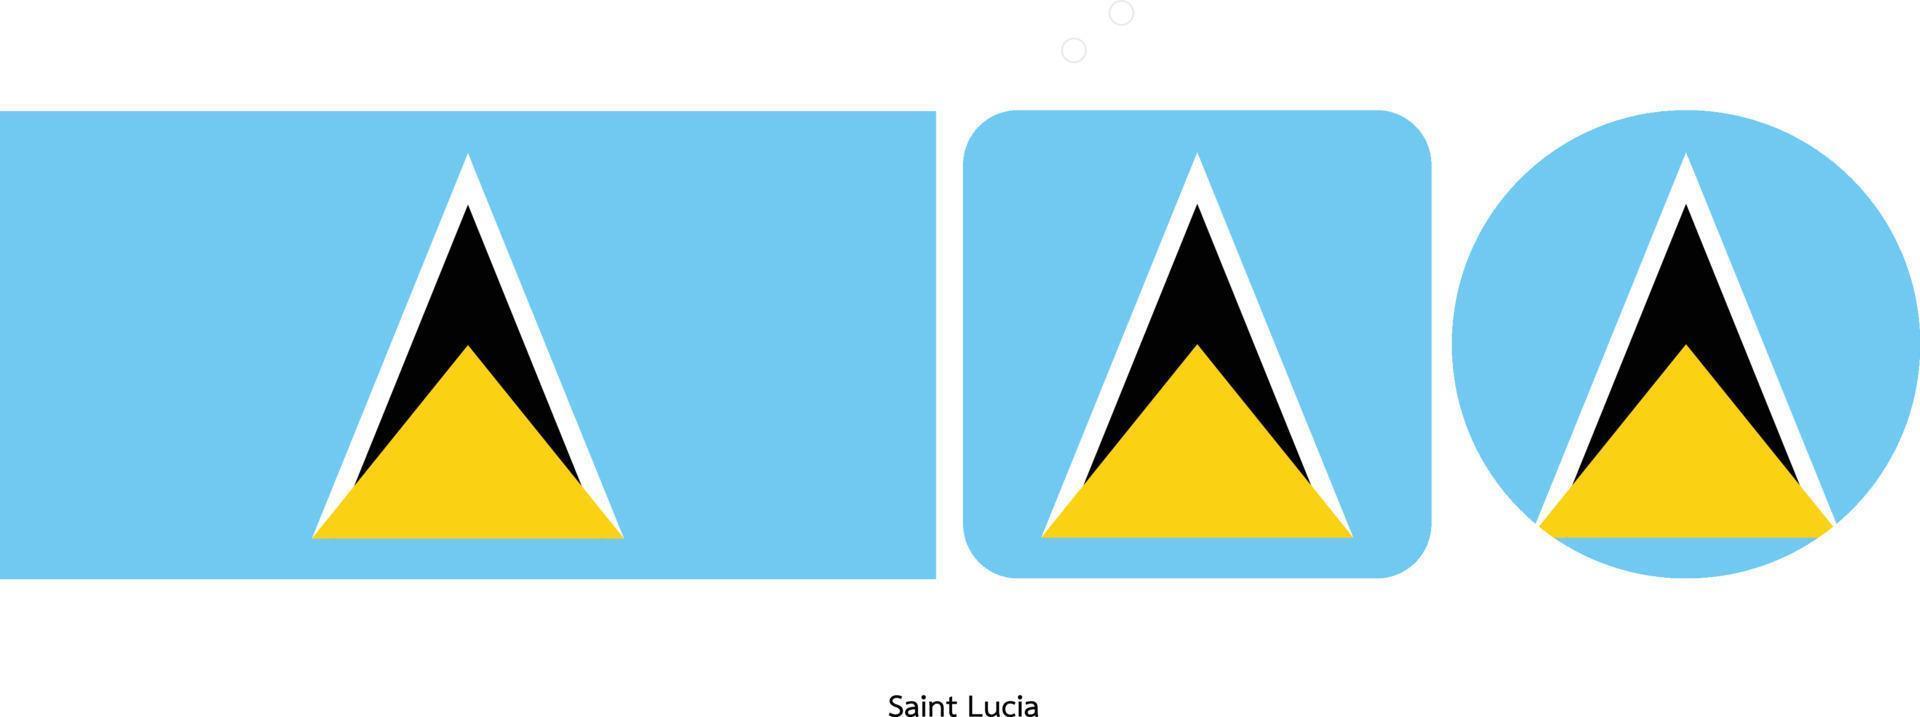 St. Lucia-Flagge, Vektorillustration vektor